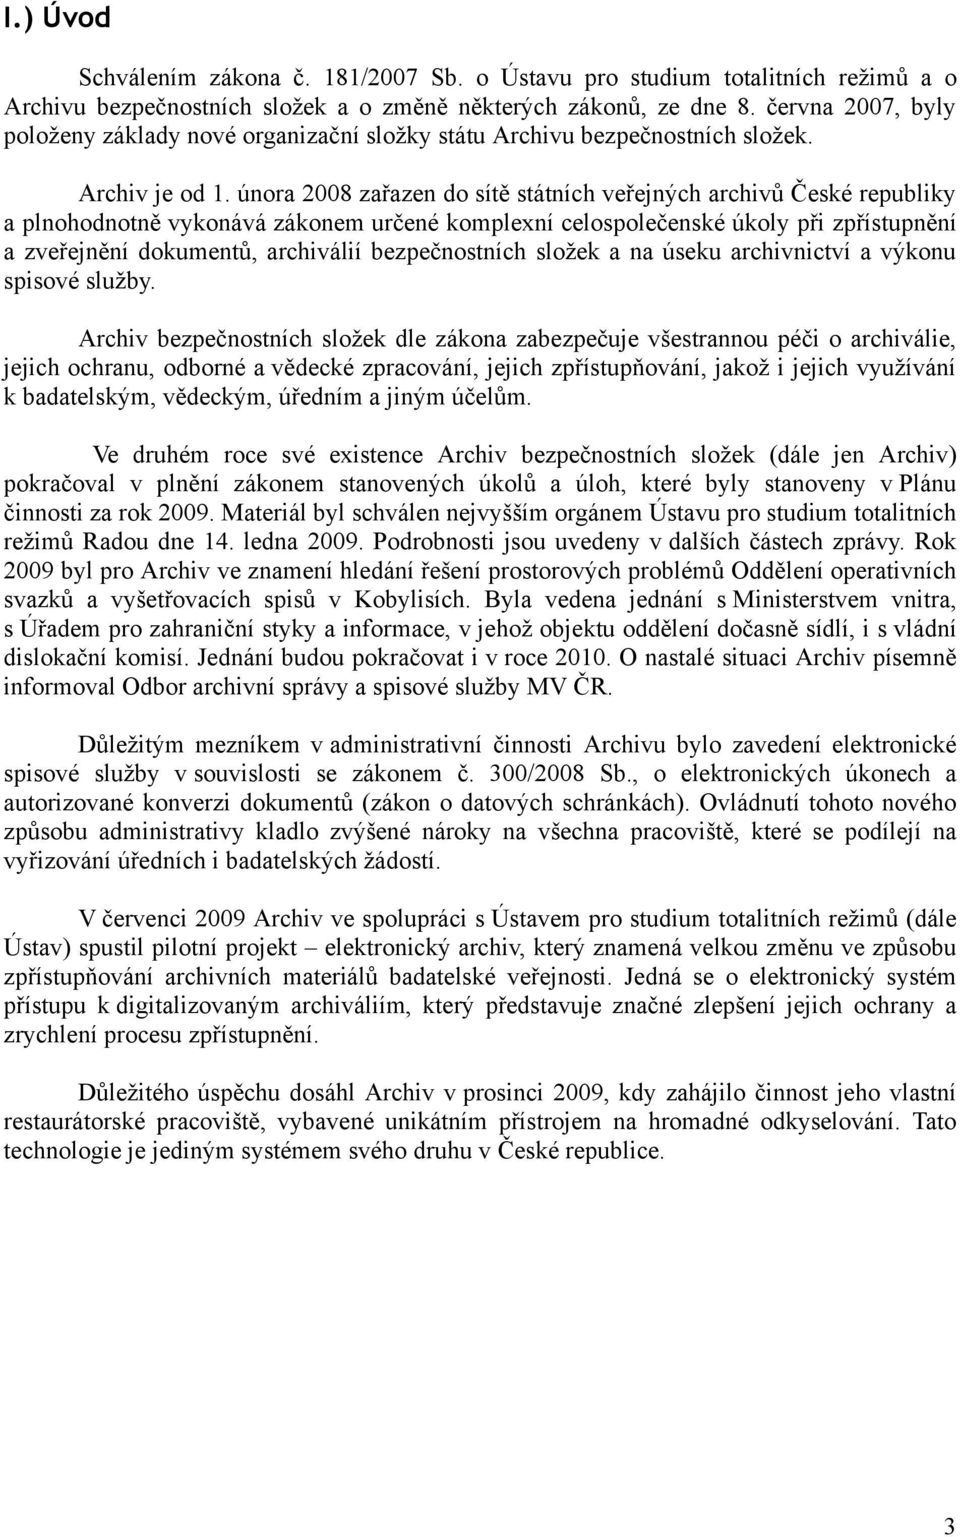 února 2008 zařazen do sítě státních veřejných archivů České republiky a plnohodnotně vykonává zákonem určené komplexní celospolečenské úkoly při zpřístupnění a zveřejnění dokumentů, archiválií